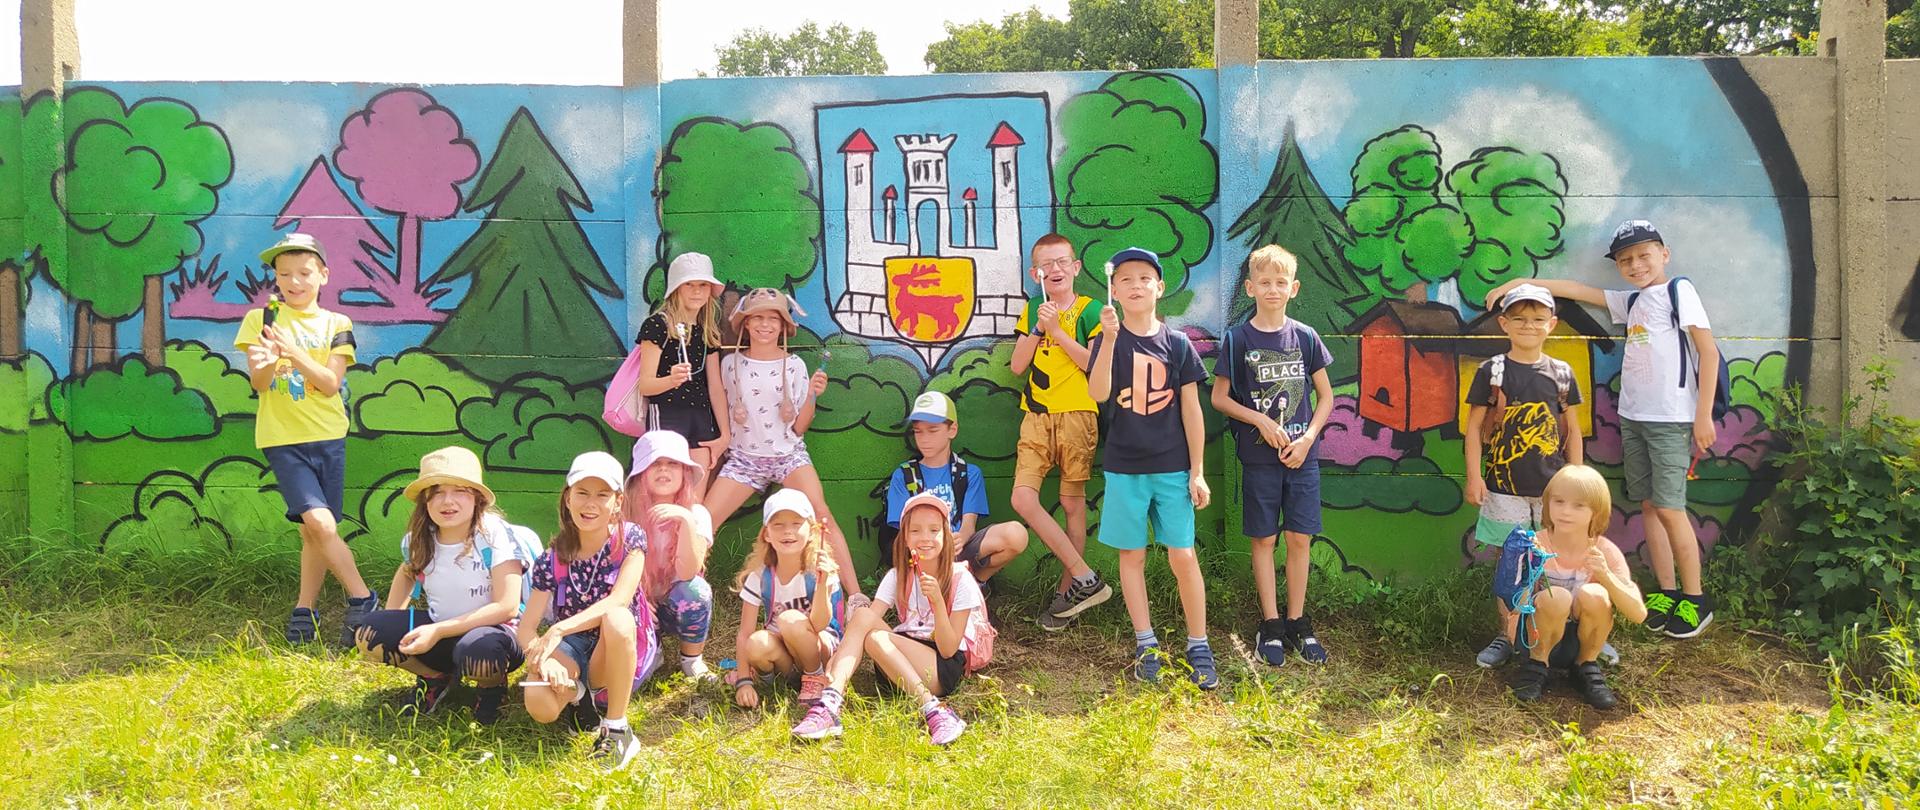 Grupa dzieci w letnich ubraniach trzymających ołówki. W tle betonowy mur pomalowany na kolorowo.